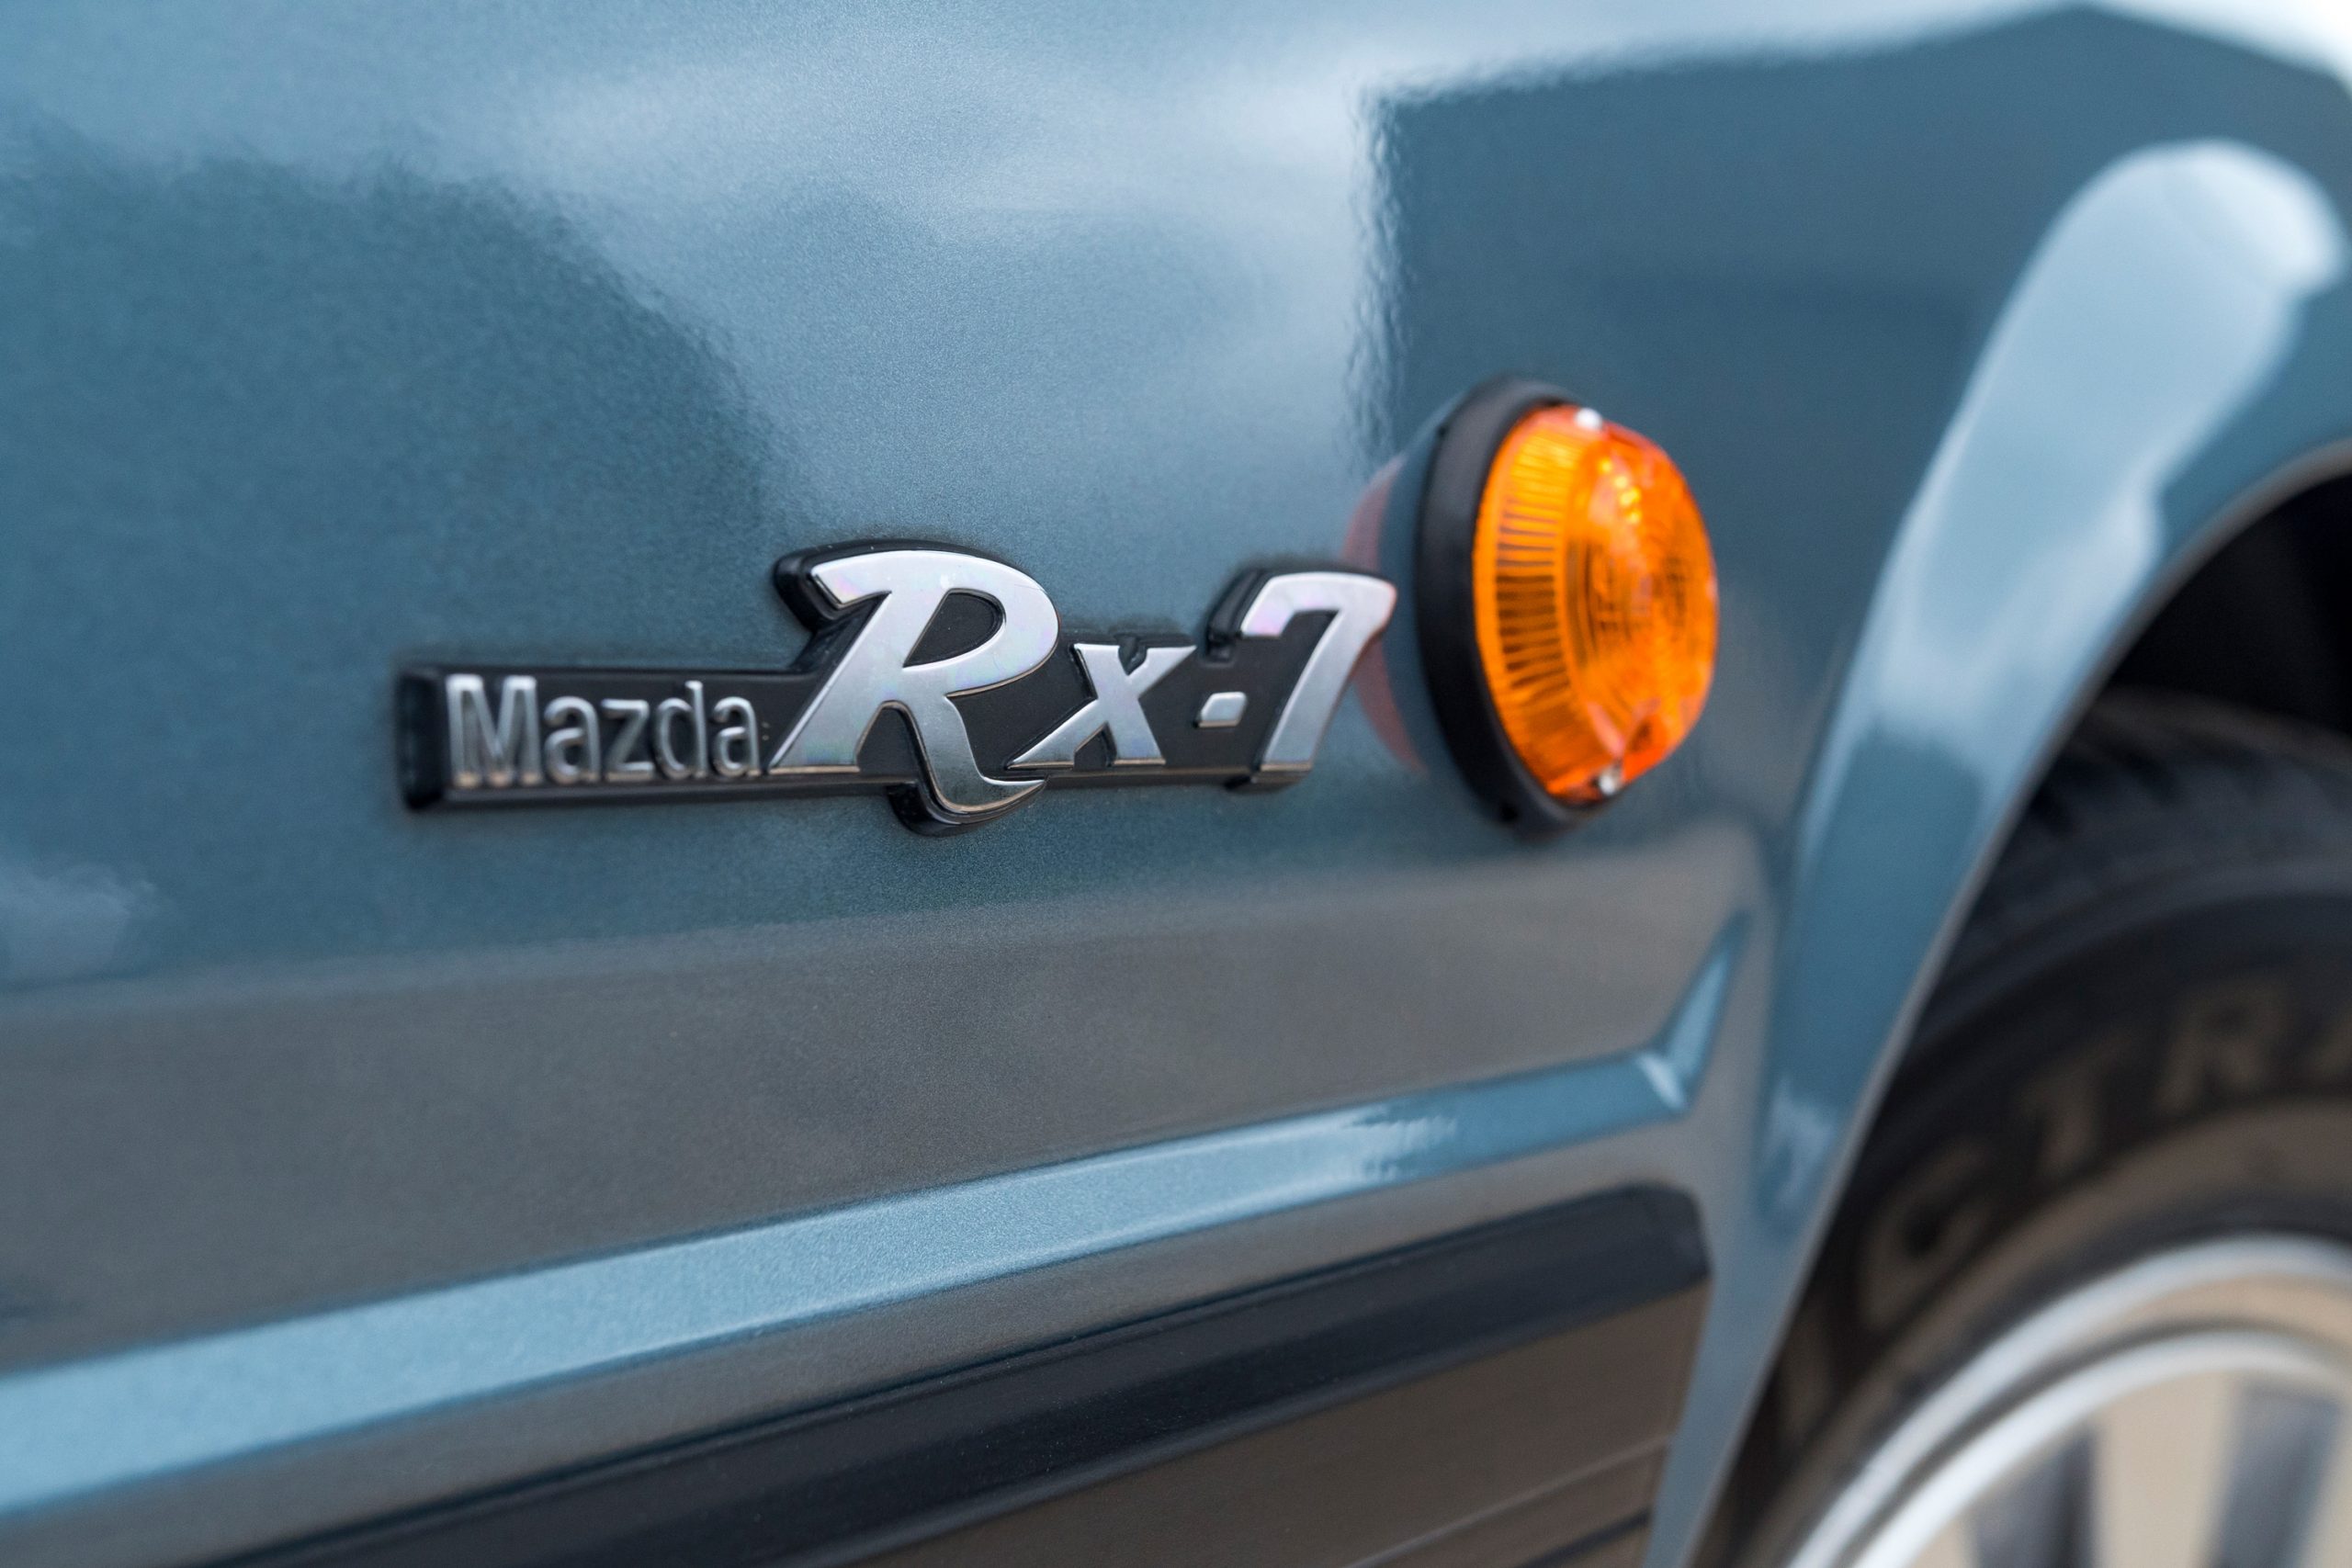 Mazda RX-7 badge